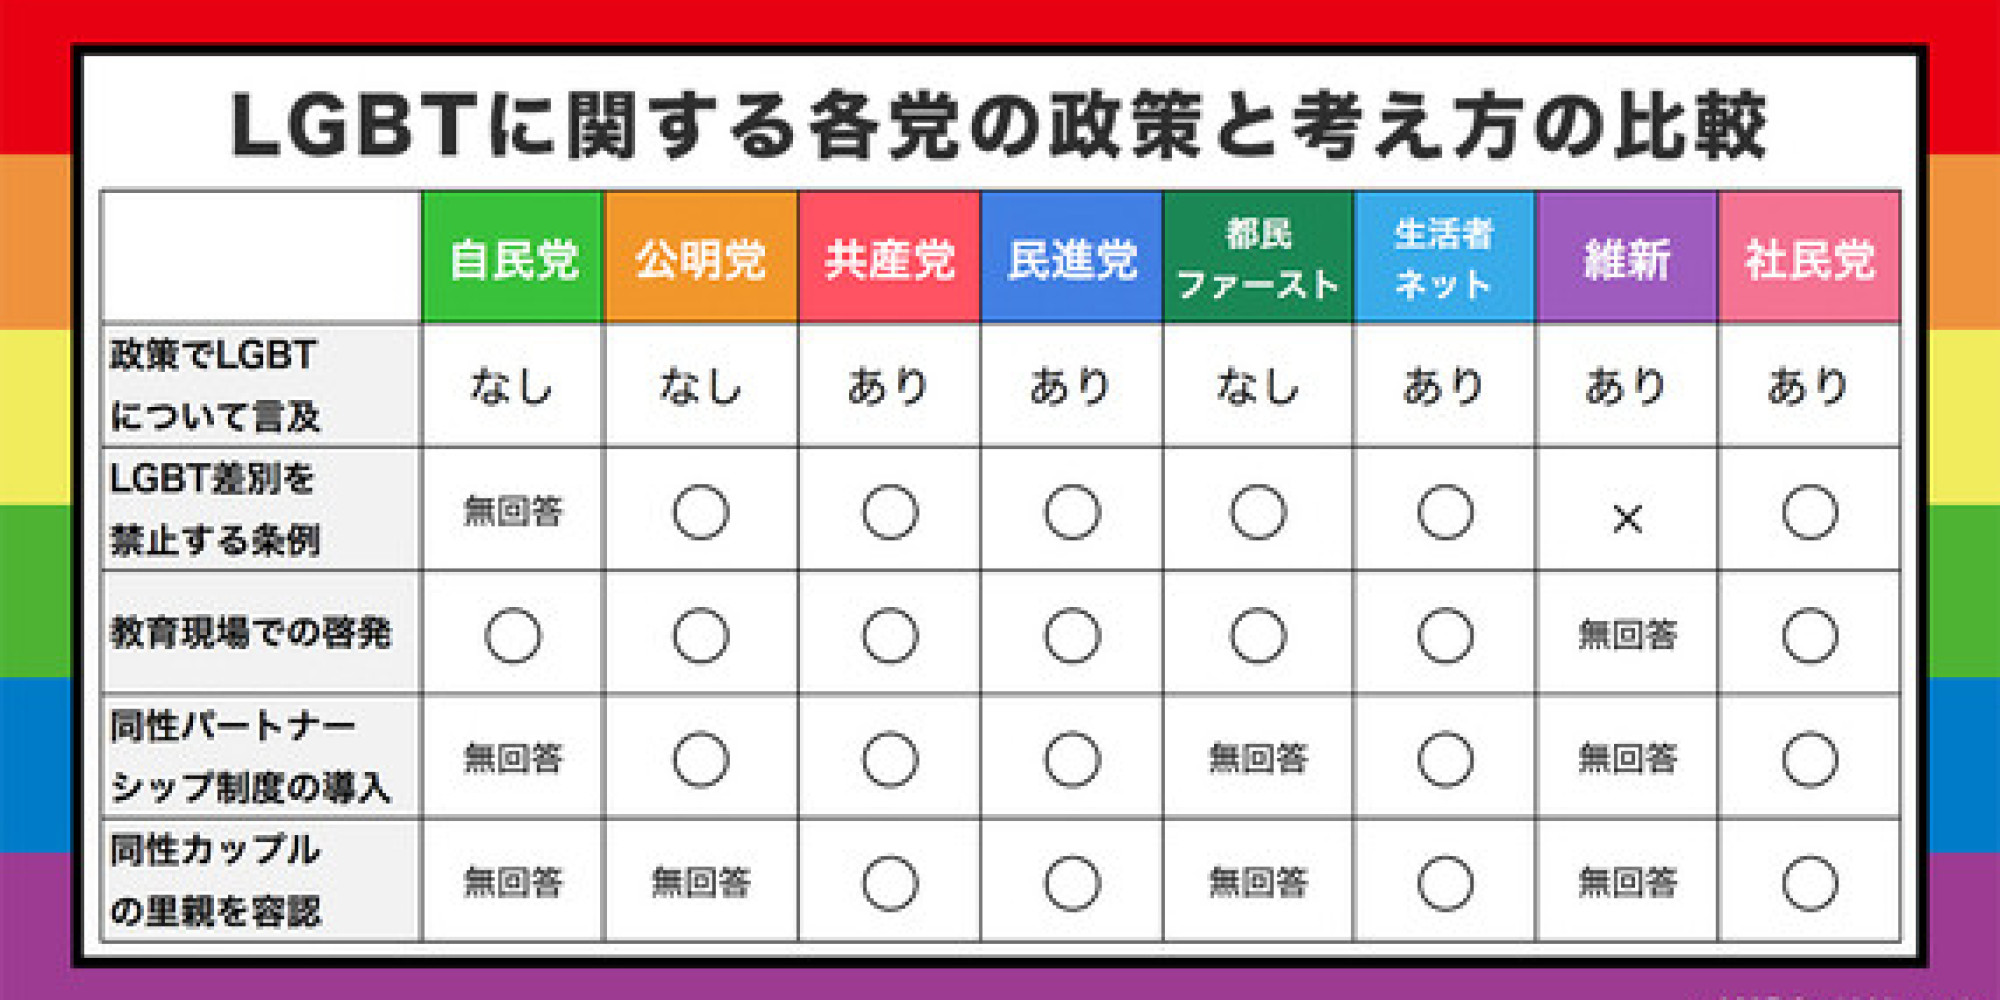 【東京都議選】LGBTの政策について各党にアンケートをとって比べてみた